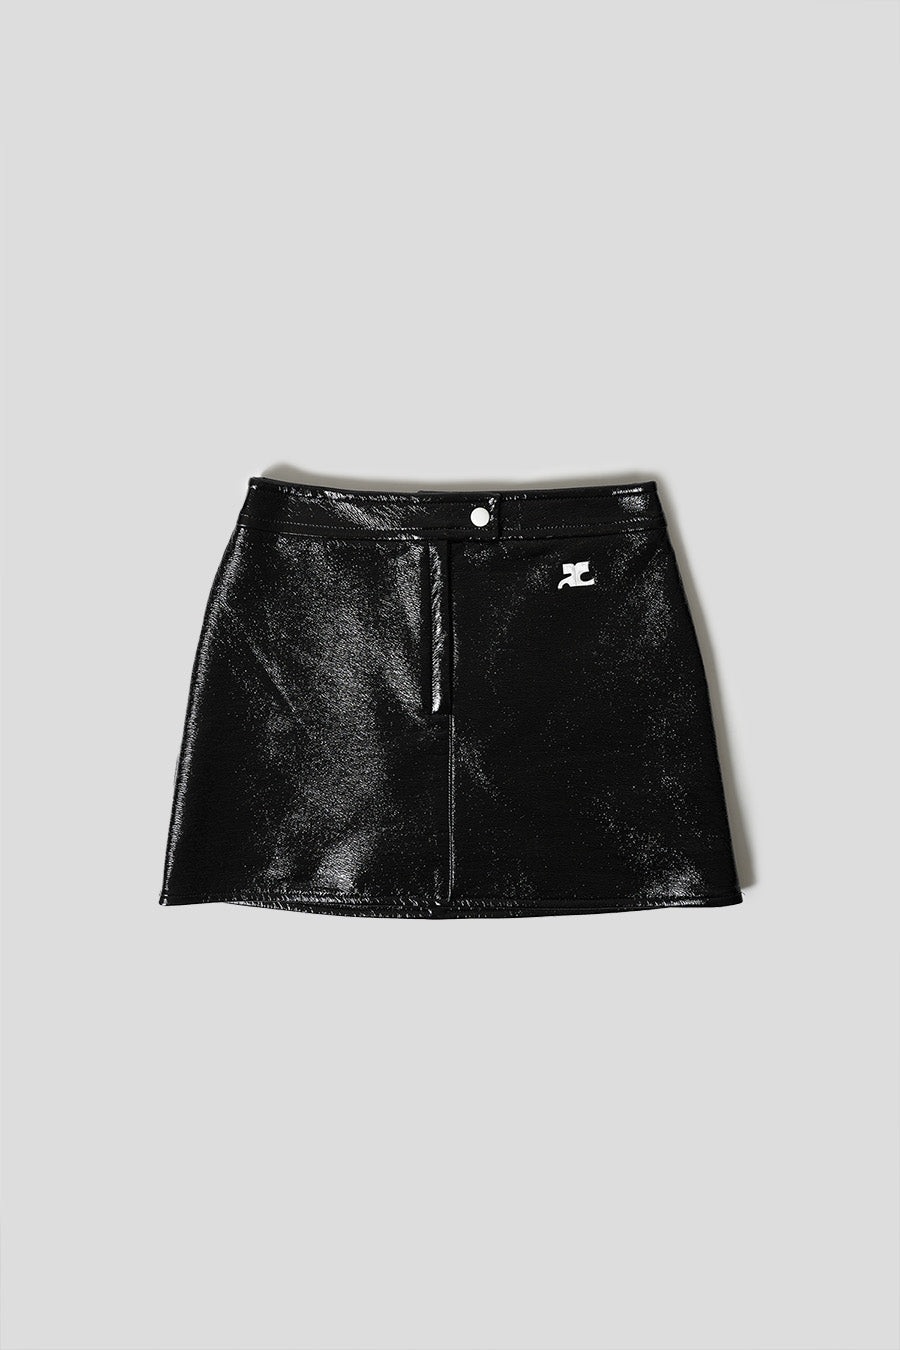 Faux Leather Vinyl Skater Skirt - Black